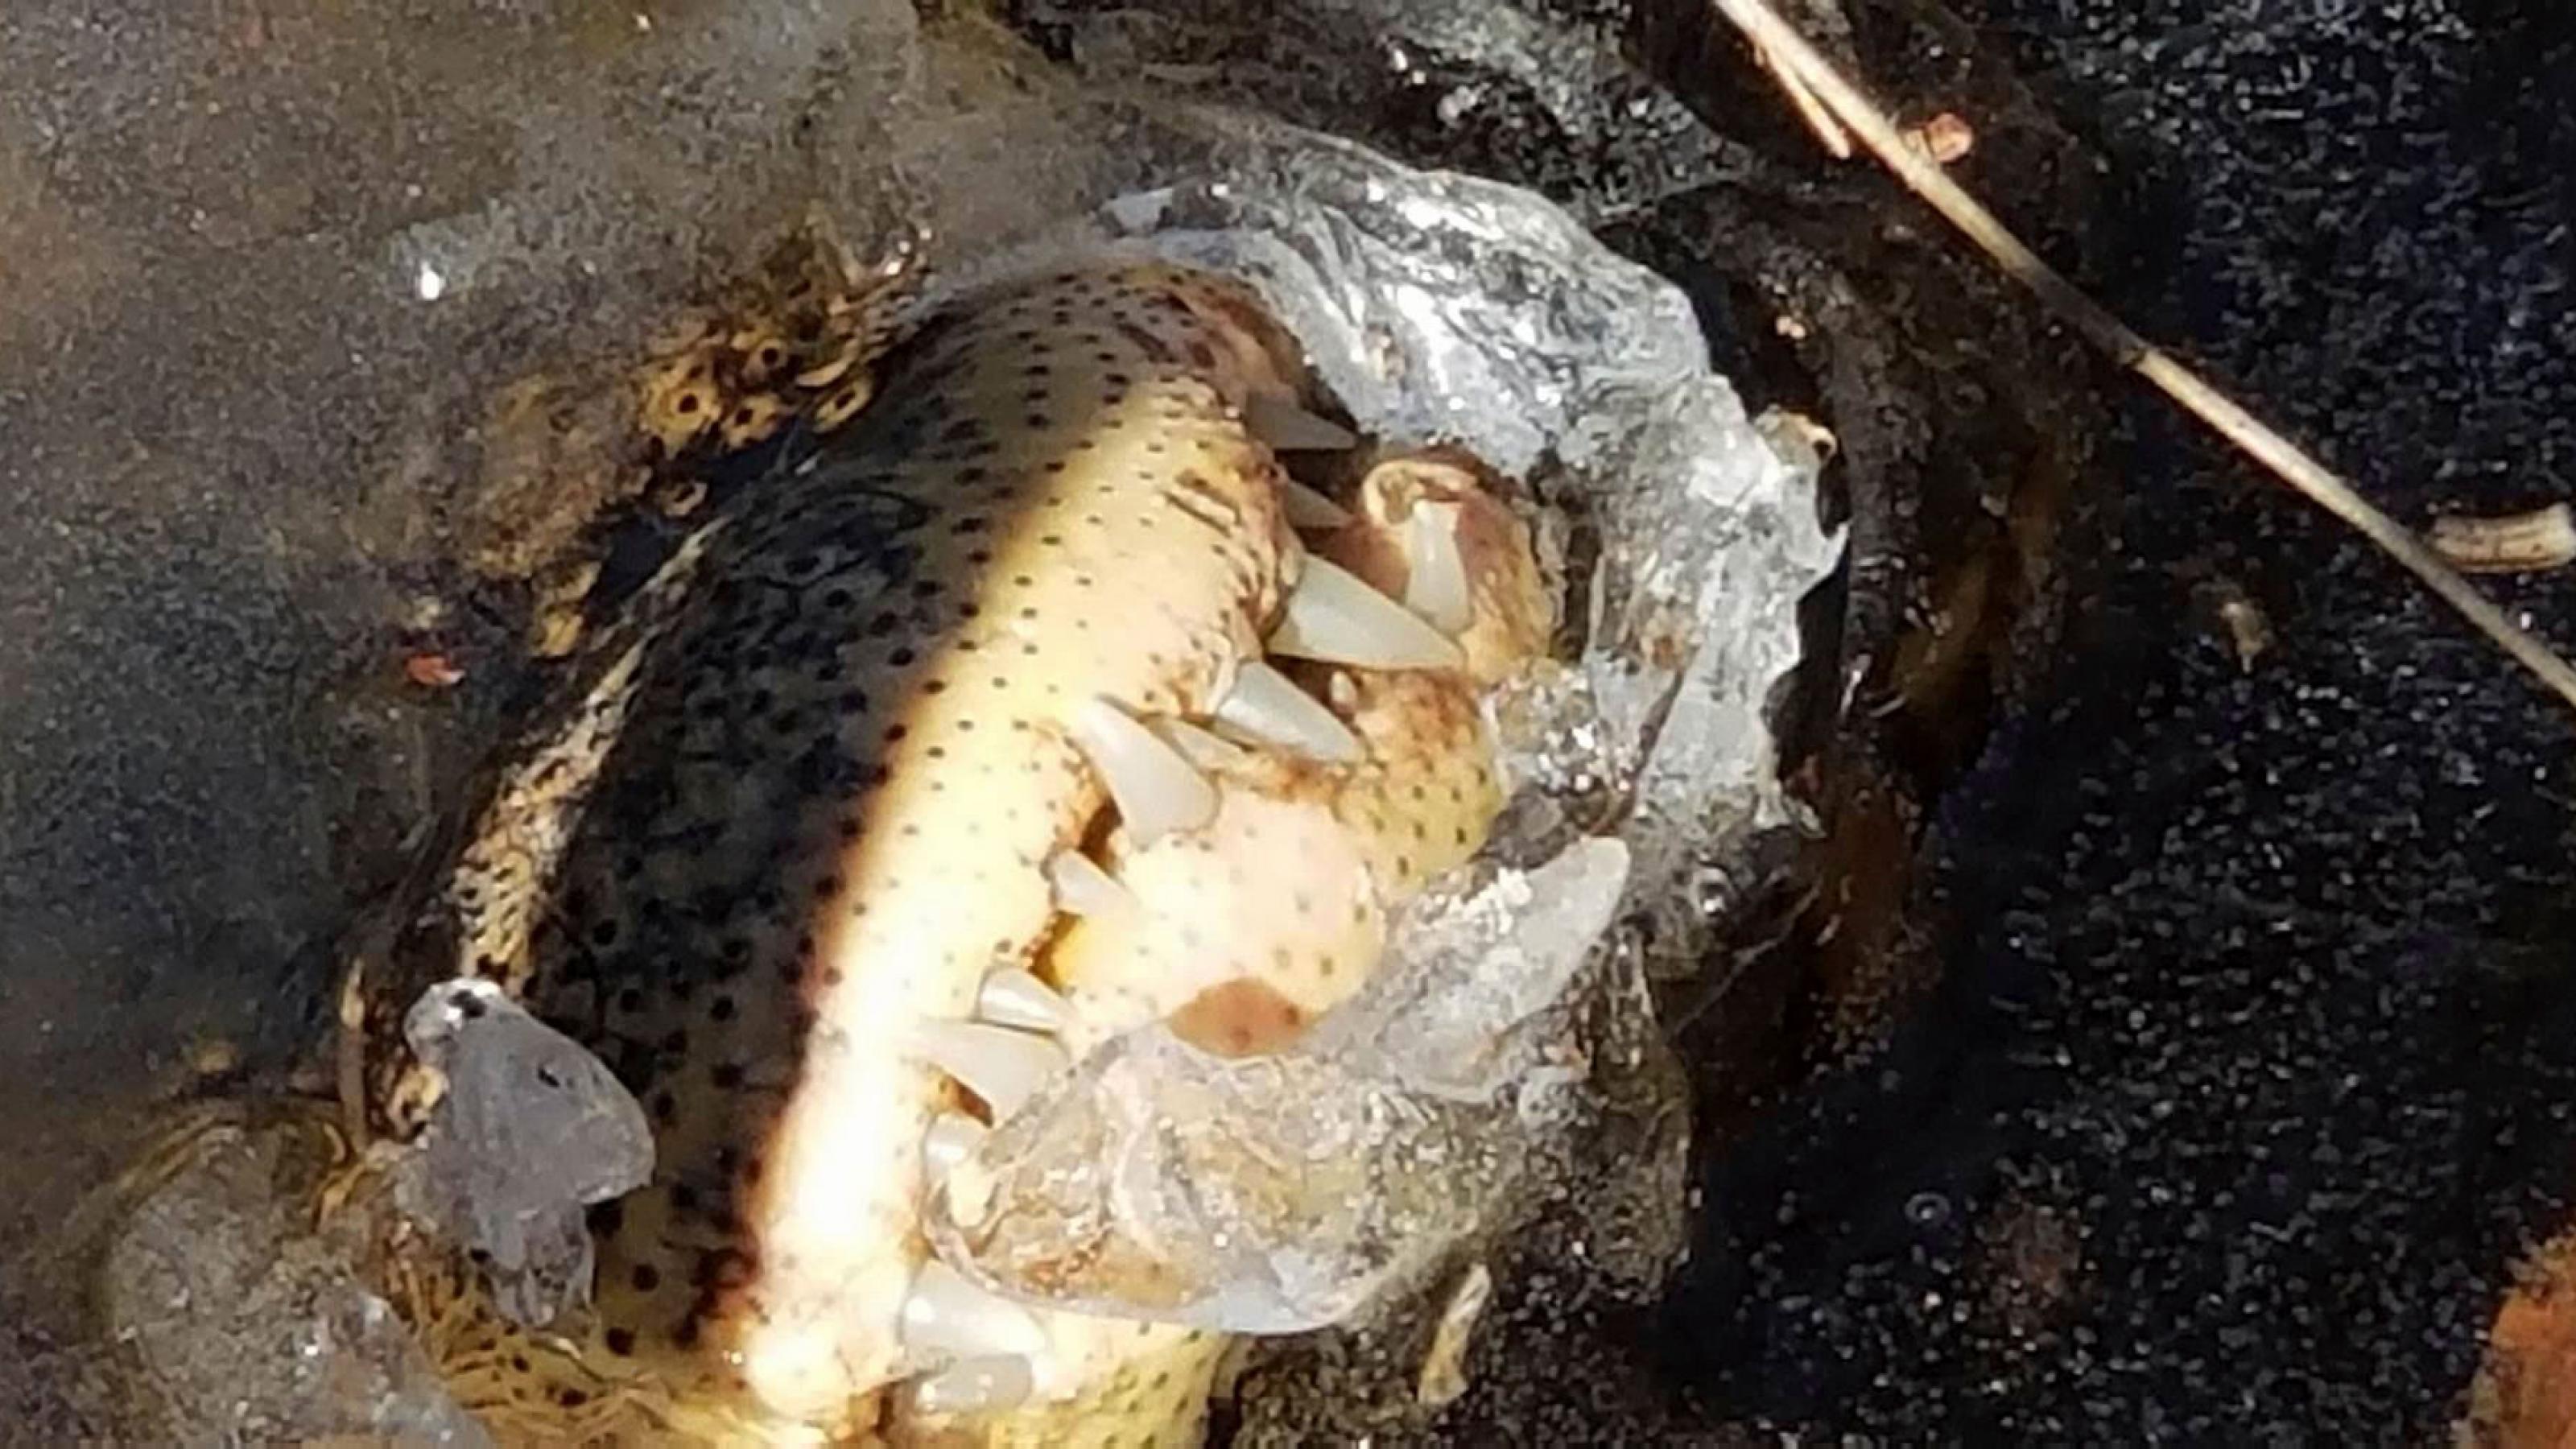 Die Schnauze eines Alligators ragt aus dem Eis eines Gewässers. Man sieht die mächtigen Zähne des Ober- und Unterkiefers.